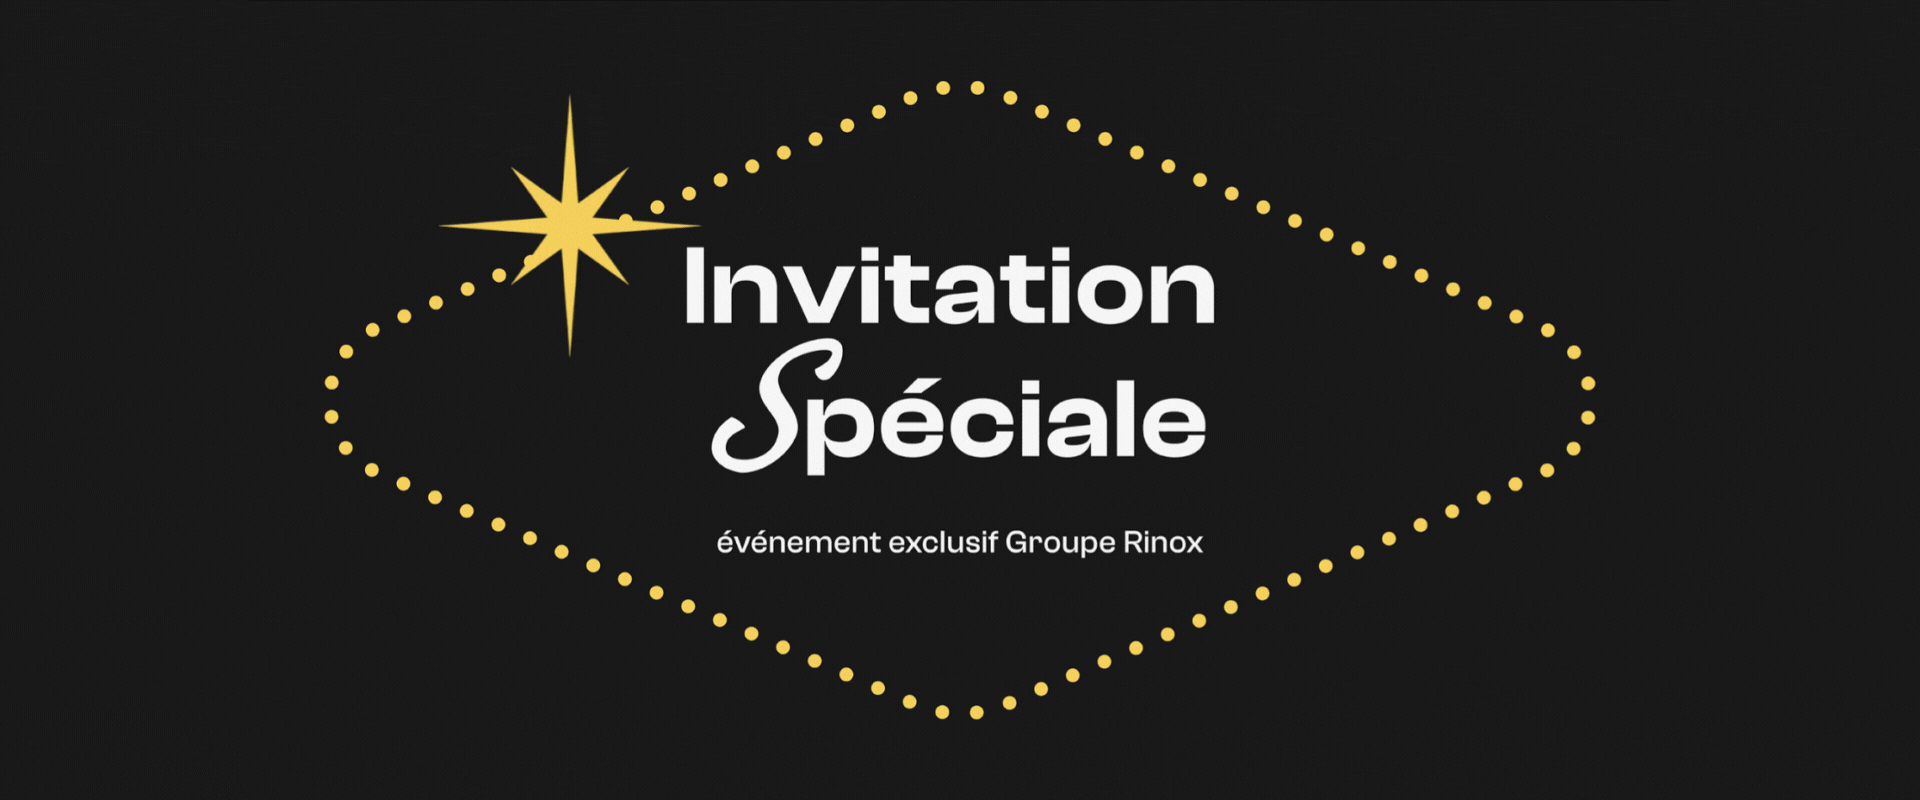 Invitation speciale